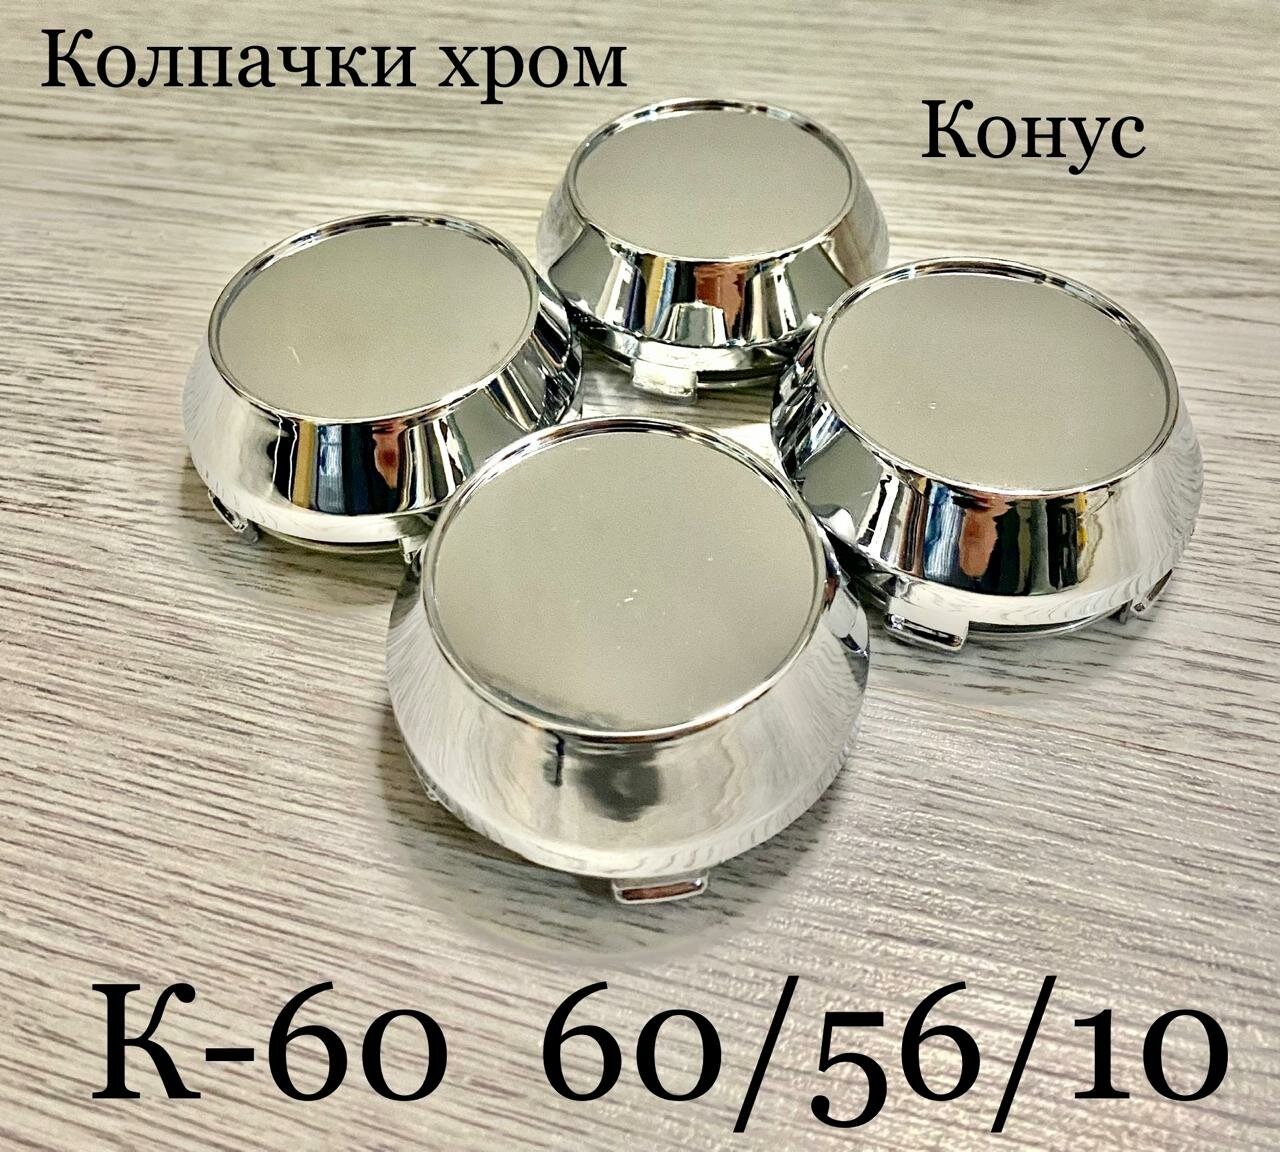 Колпачки заглушки для дисков К60 60/56/10 конус хром 4 шт